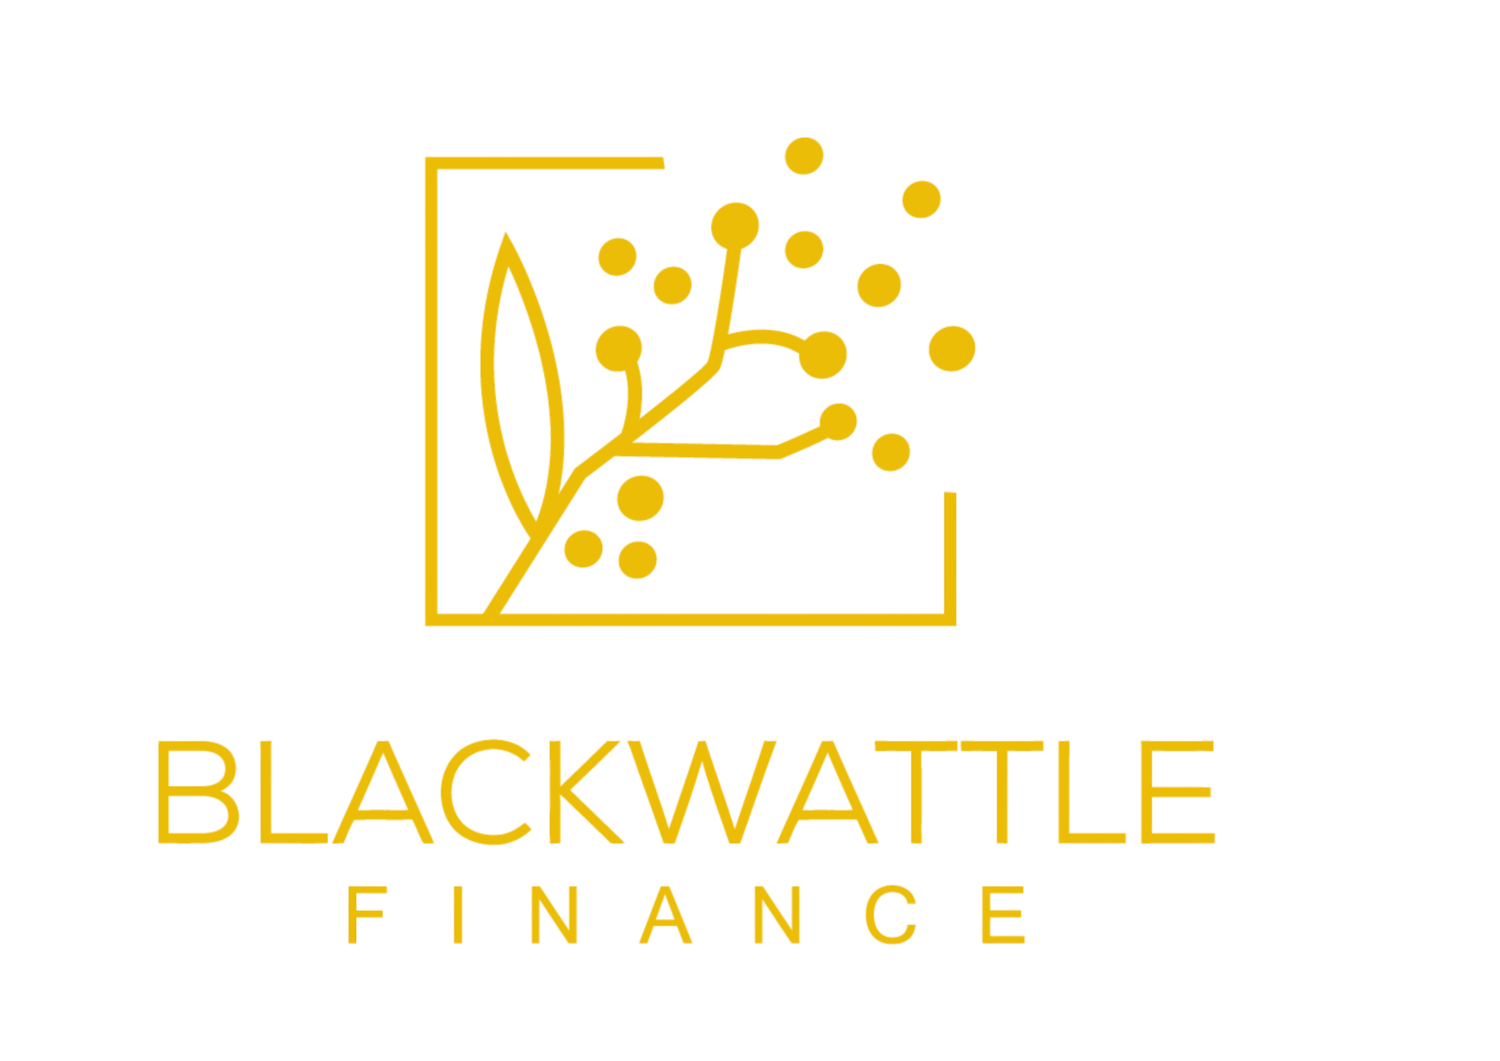 Blackwattle Finance